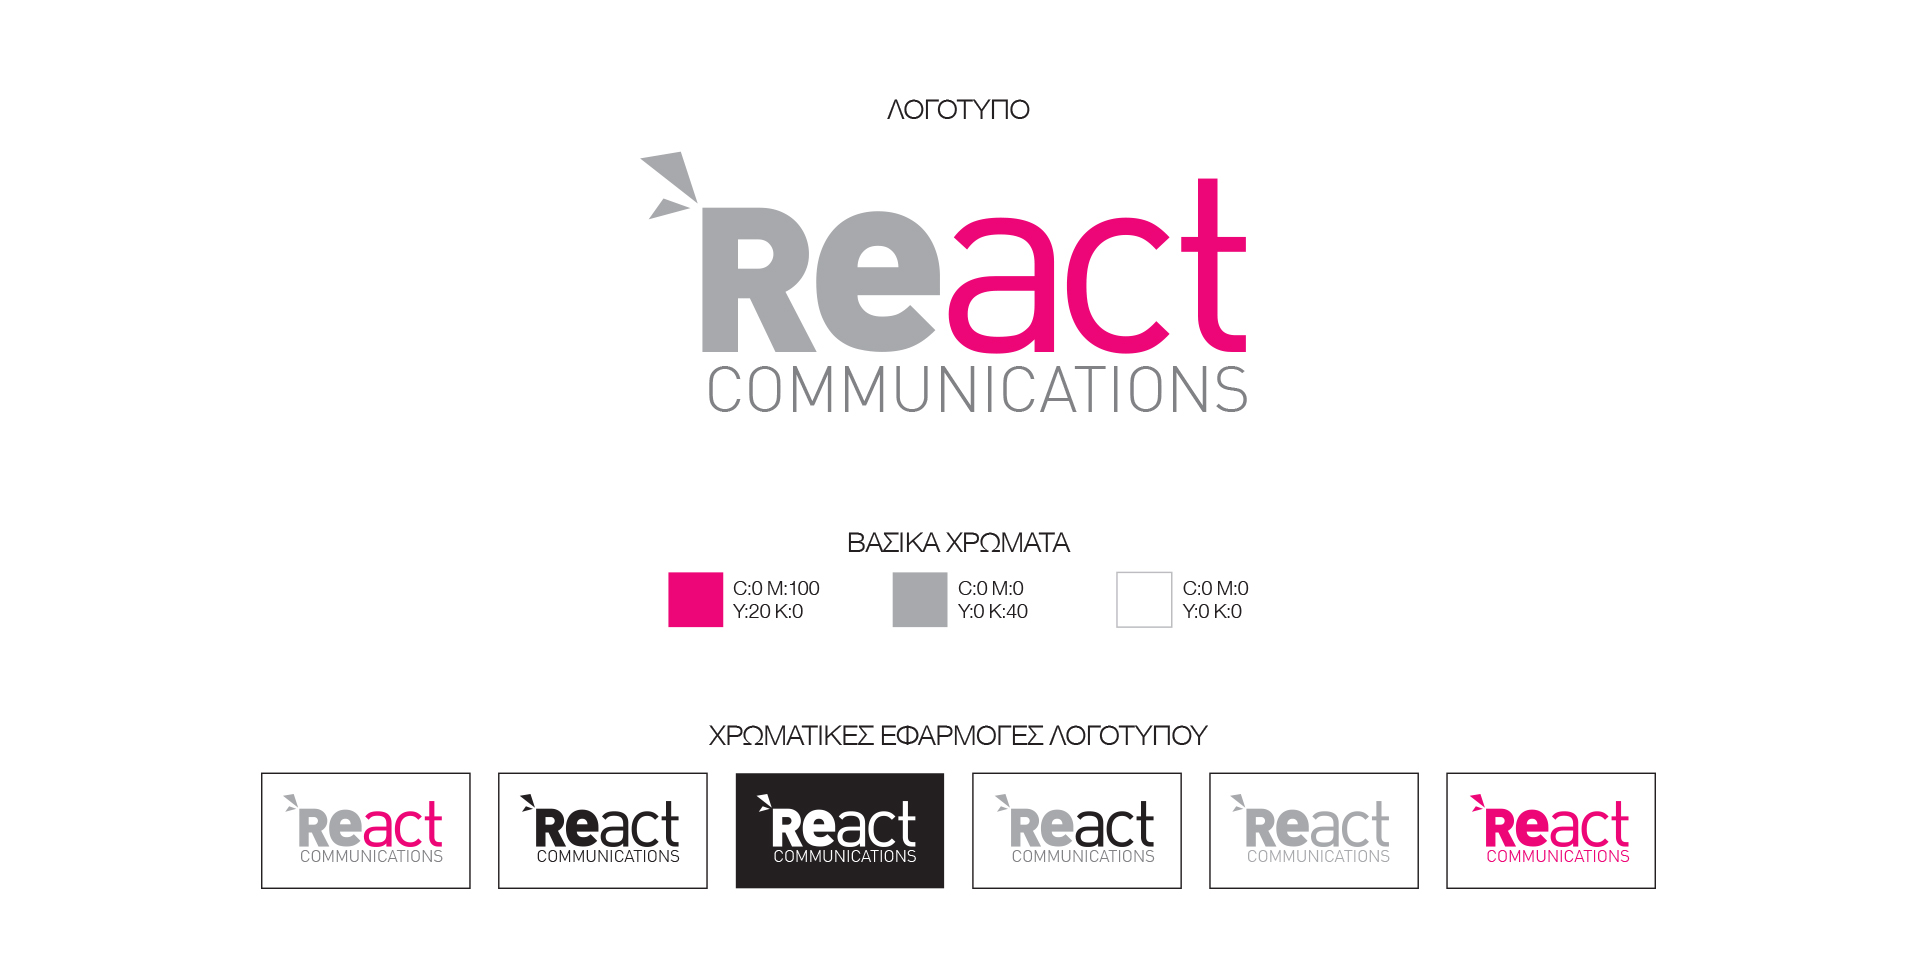 react_logo